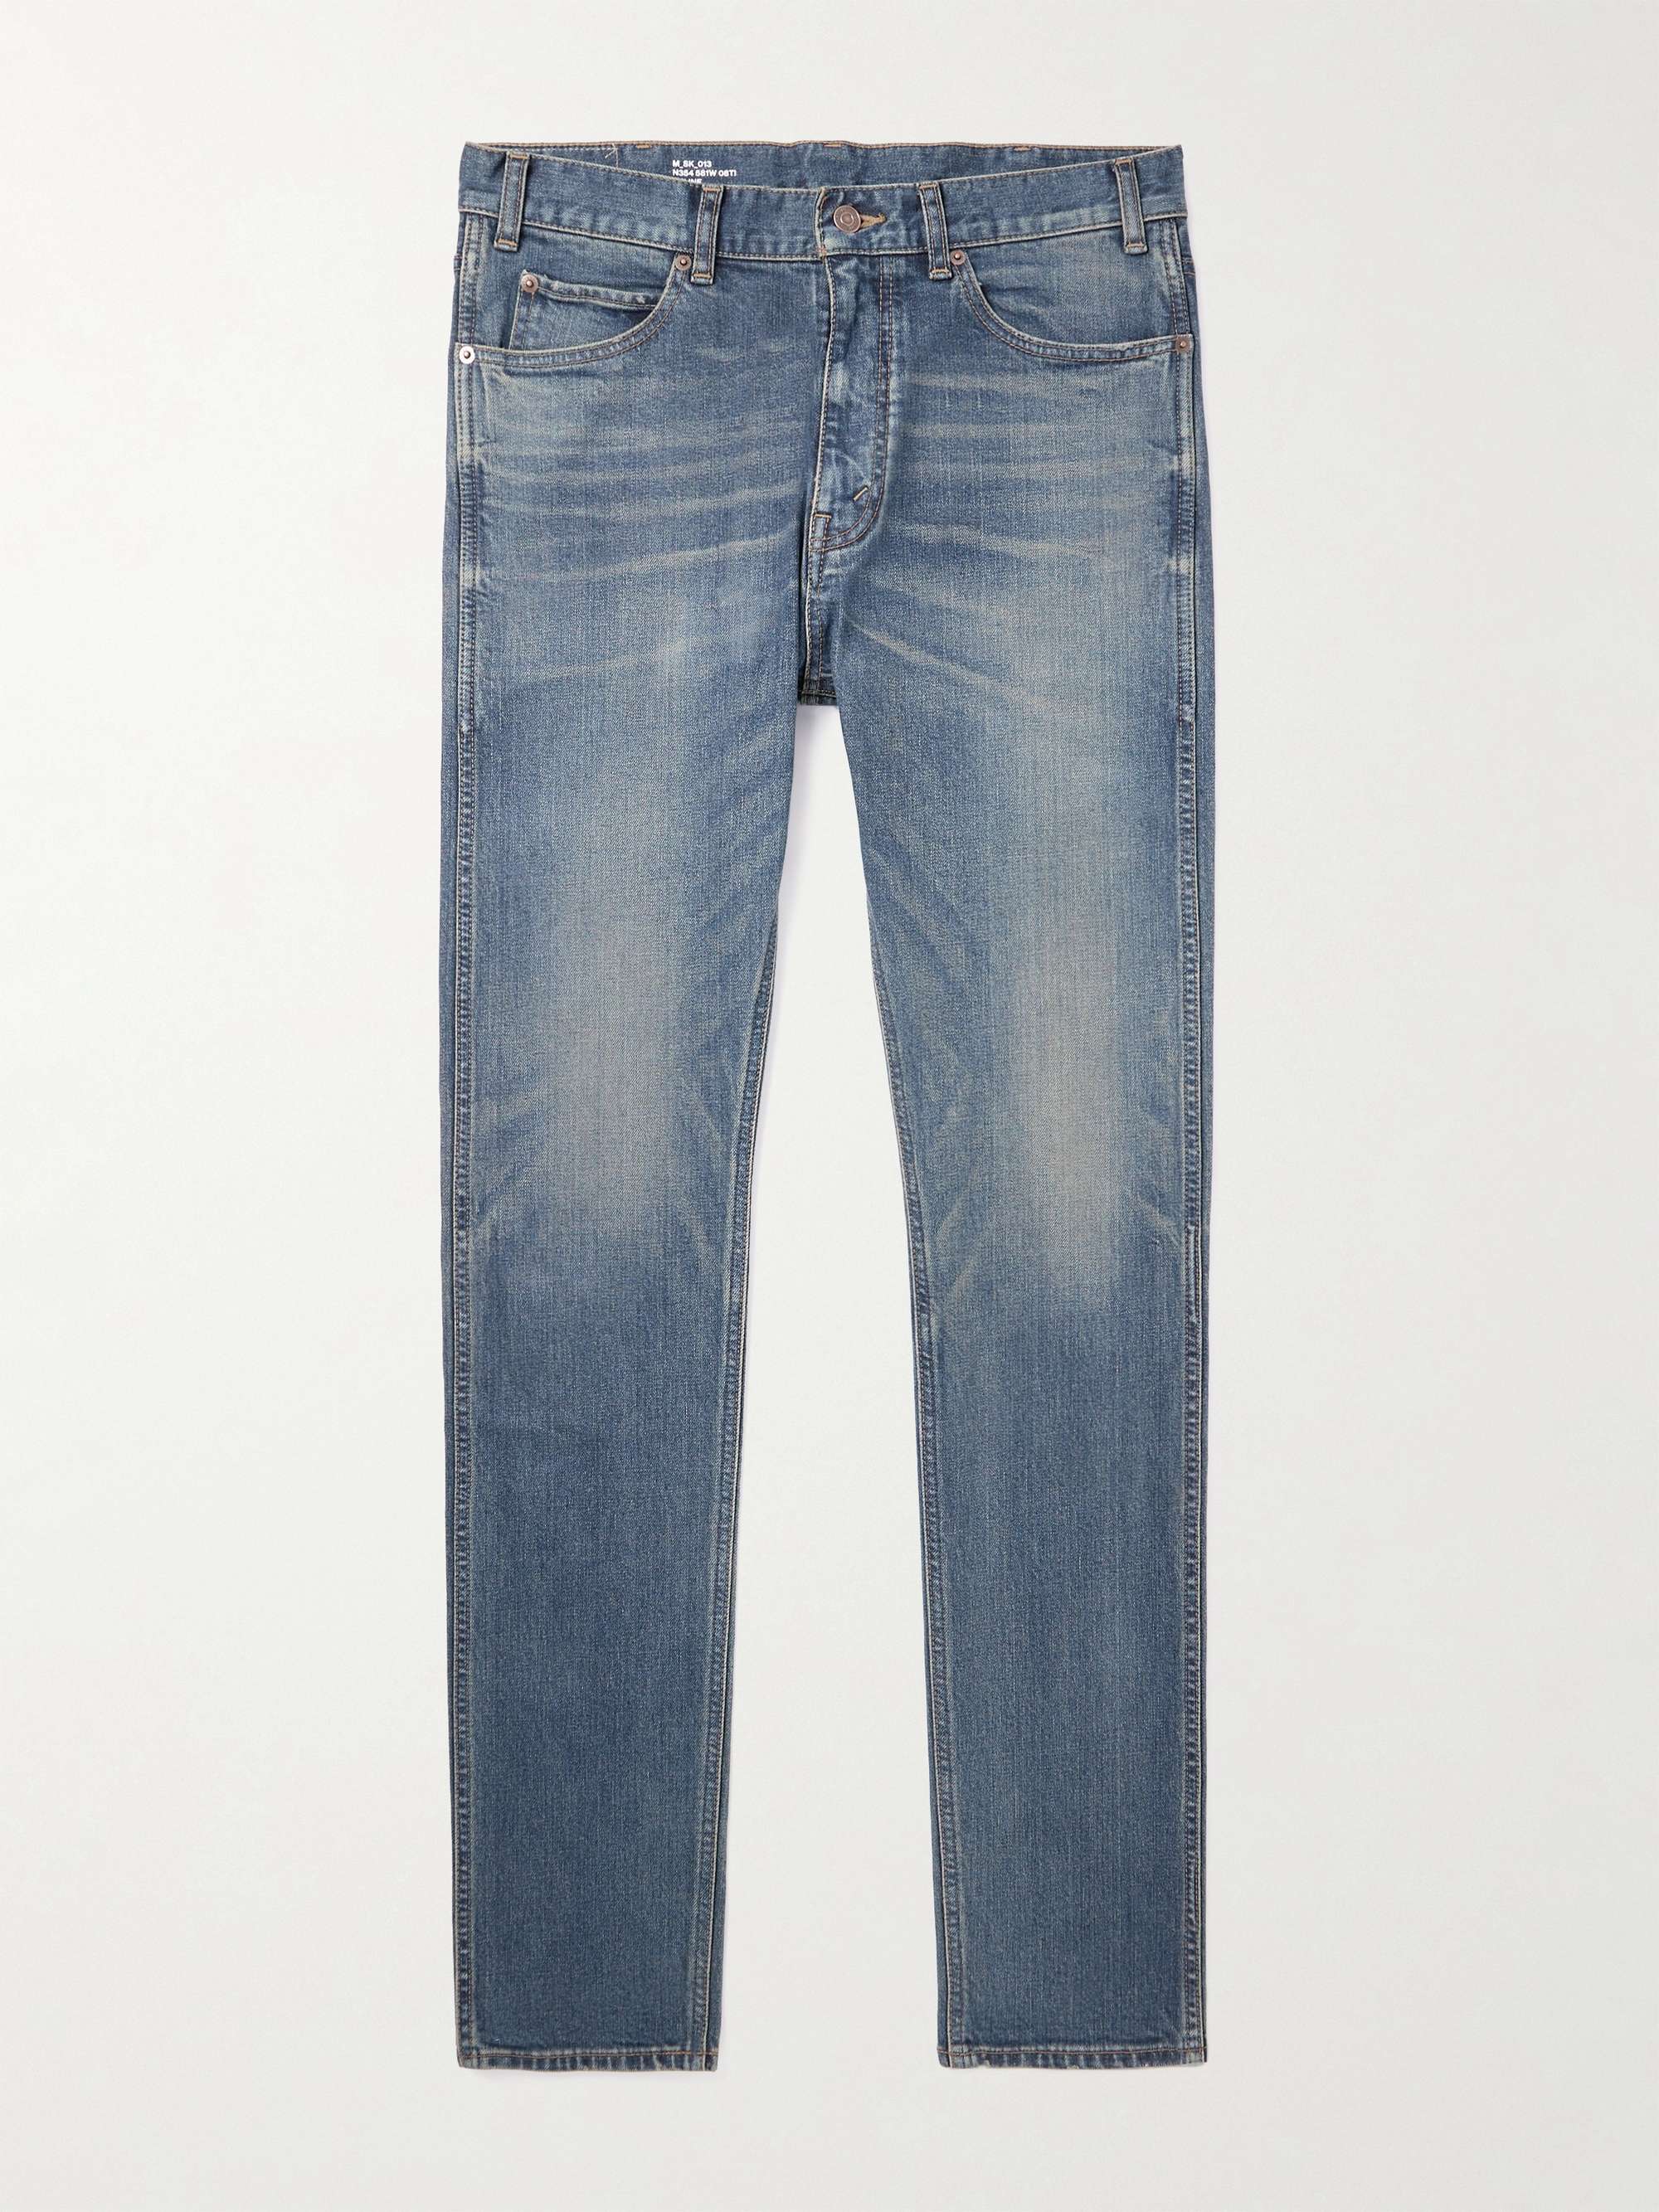 CELINE HOMME Slim-Fit Denim Jeans for Men | MR PORTER